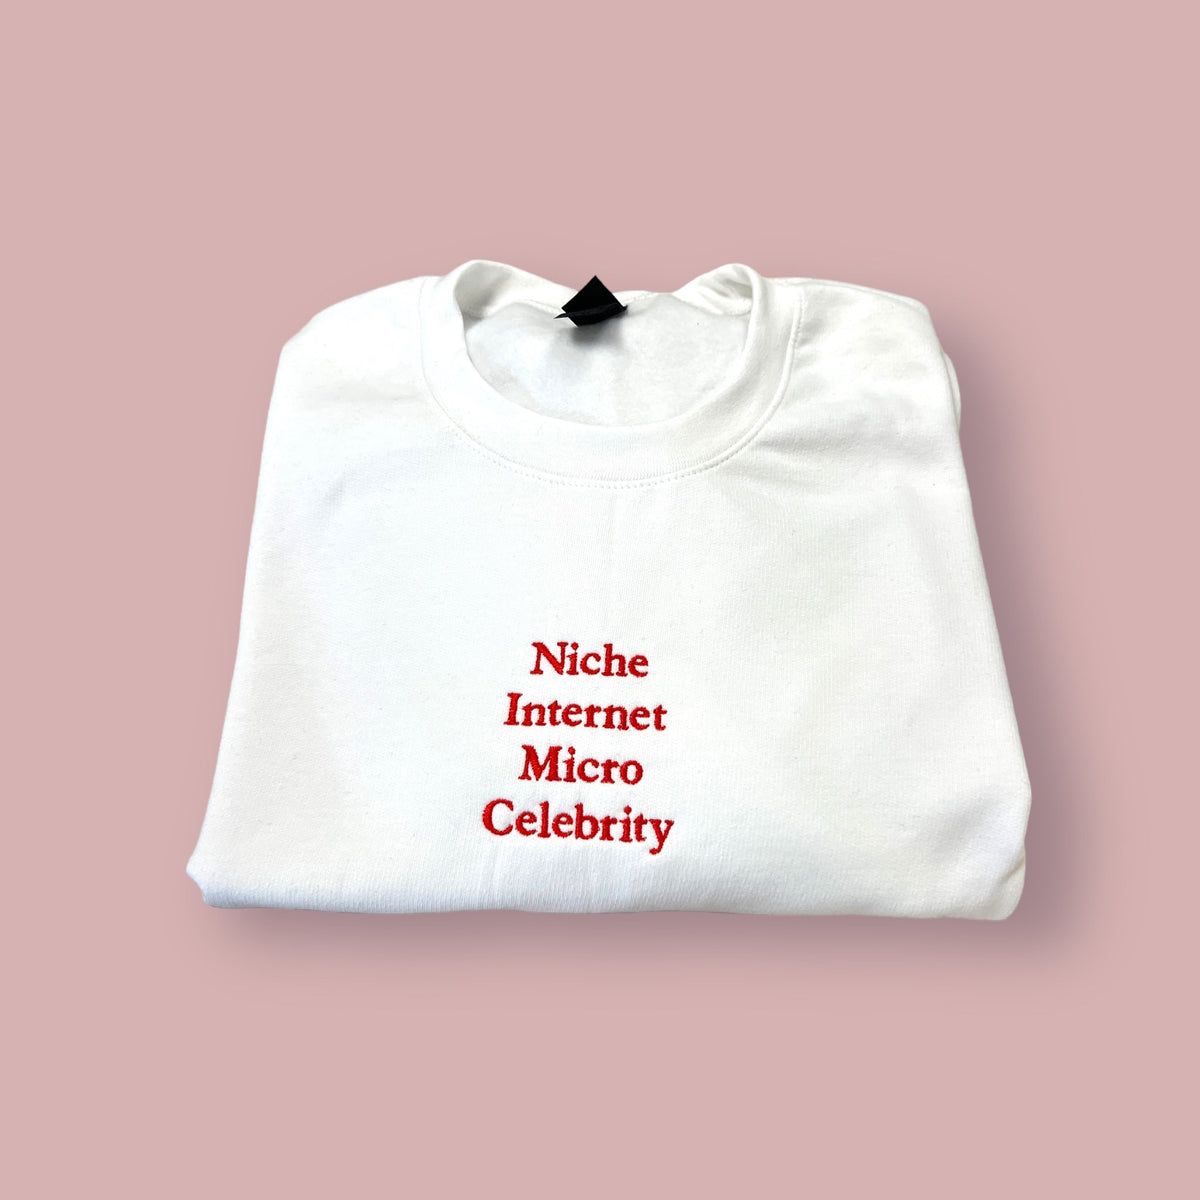 Niche Internet Micro Celebrity Unisex T-Shirt or Sweatshirt